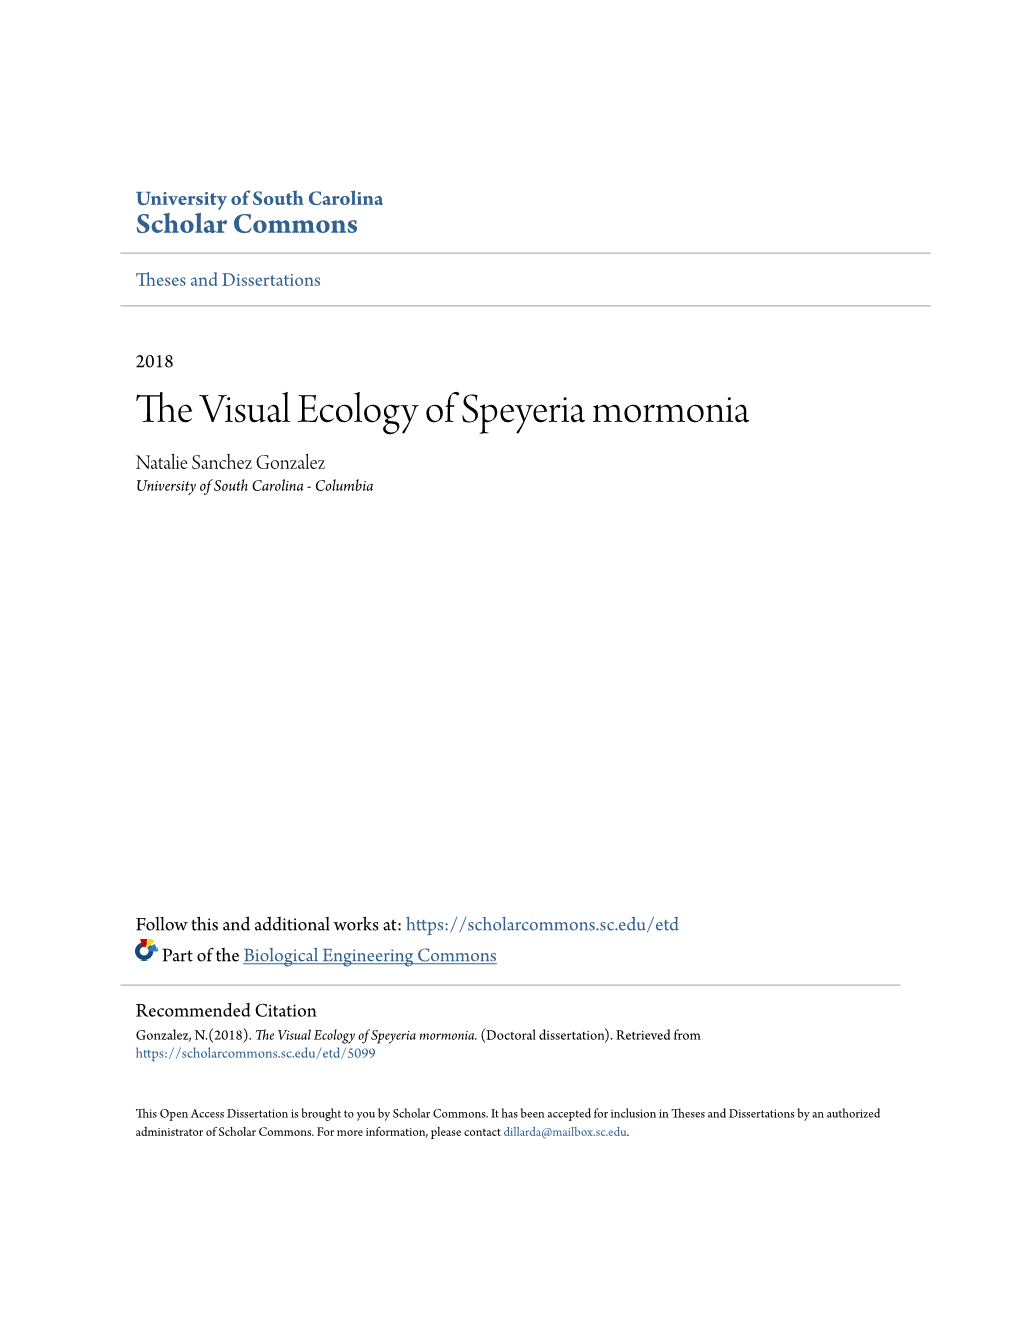 The Visual Ecology of Speyeria Mormonia